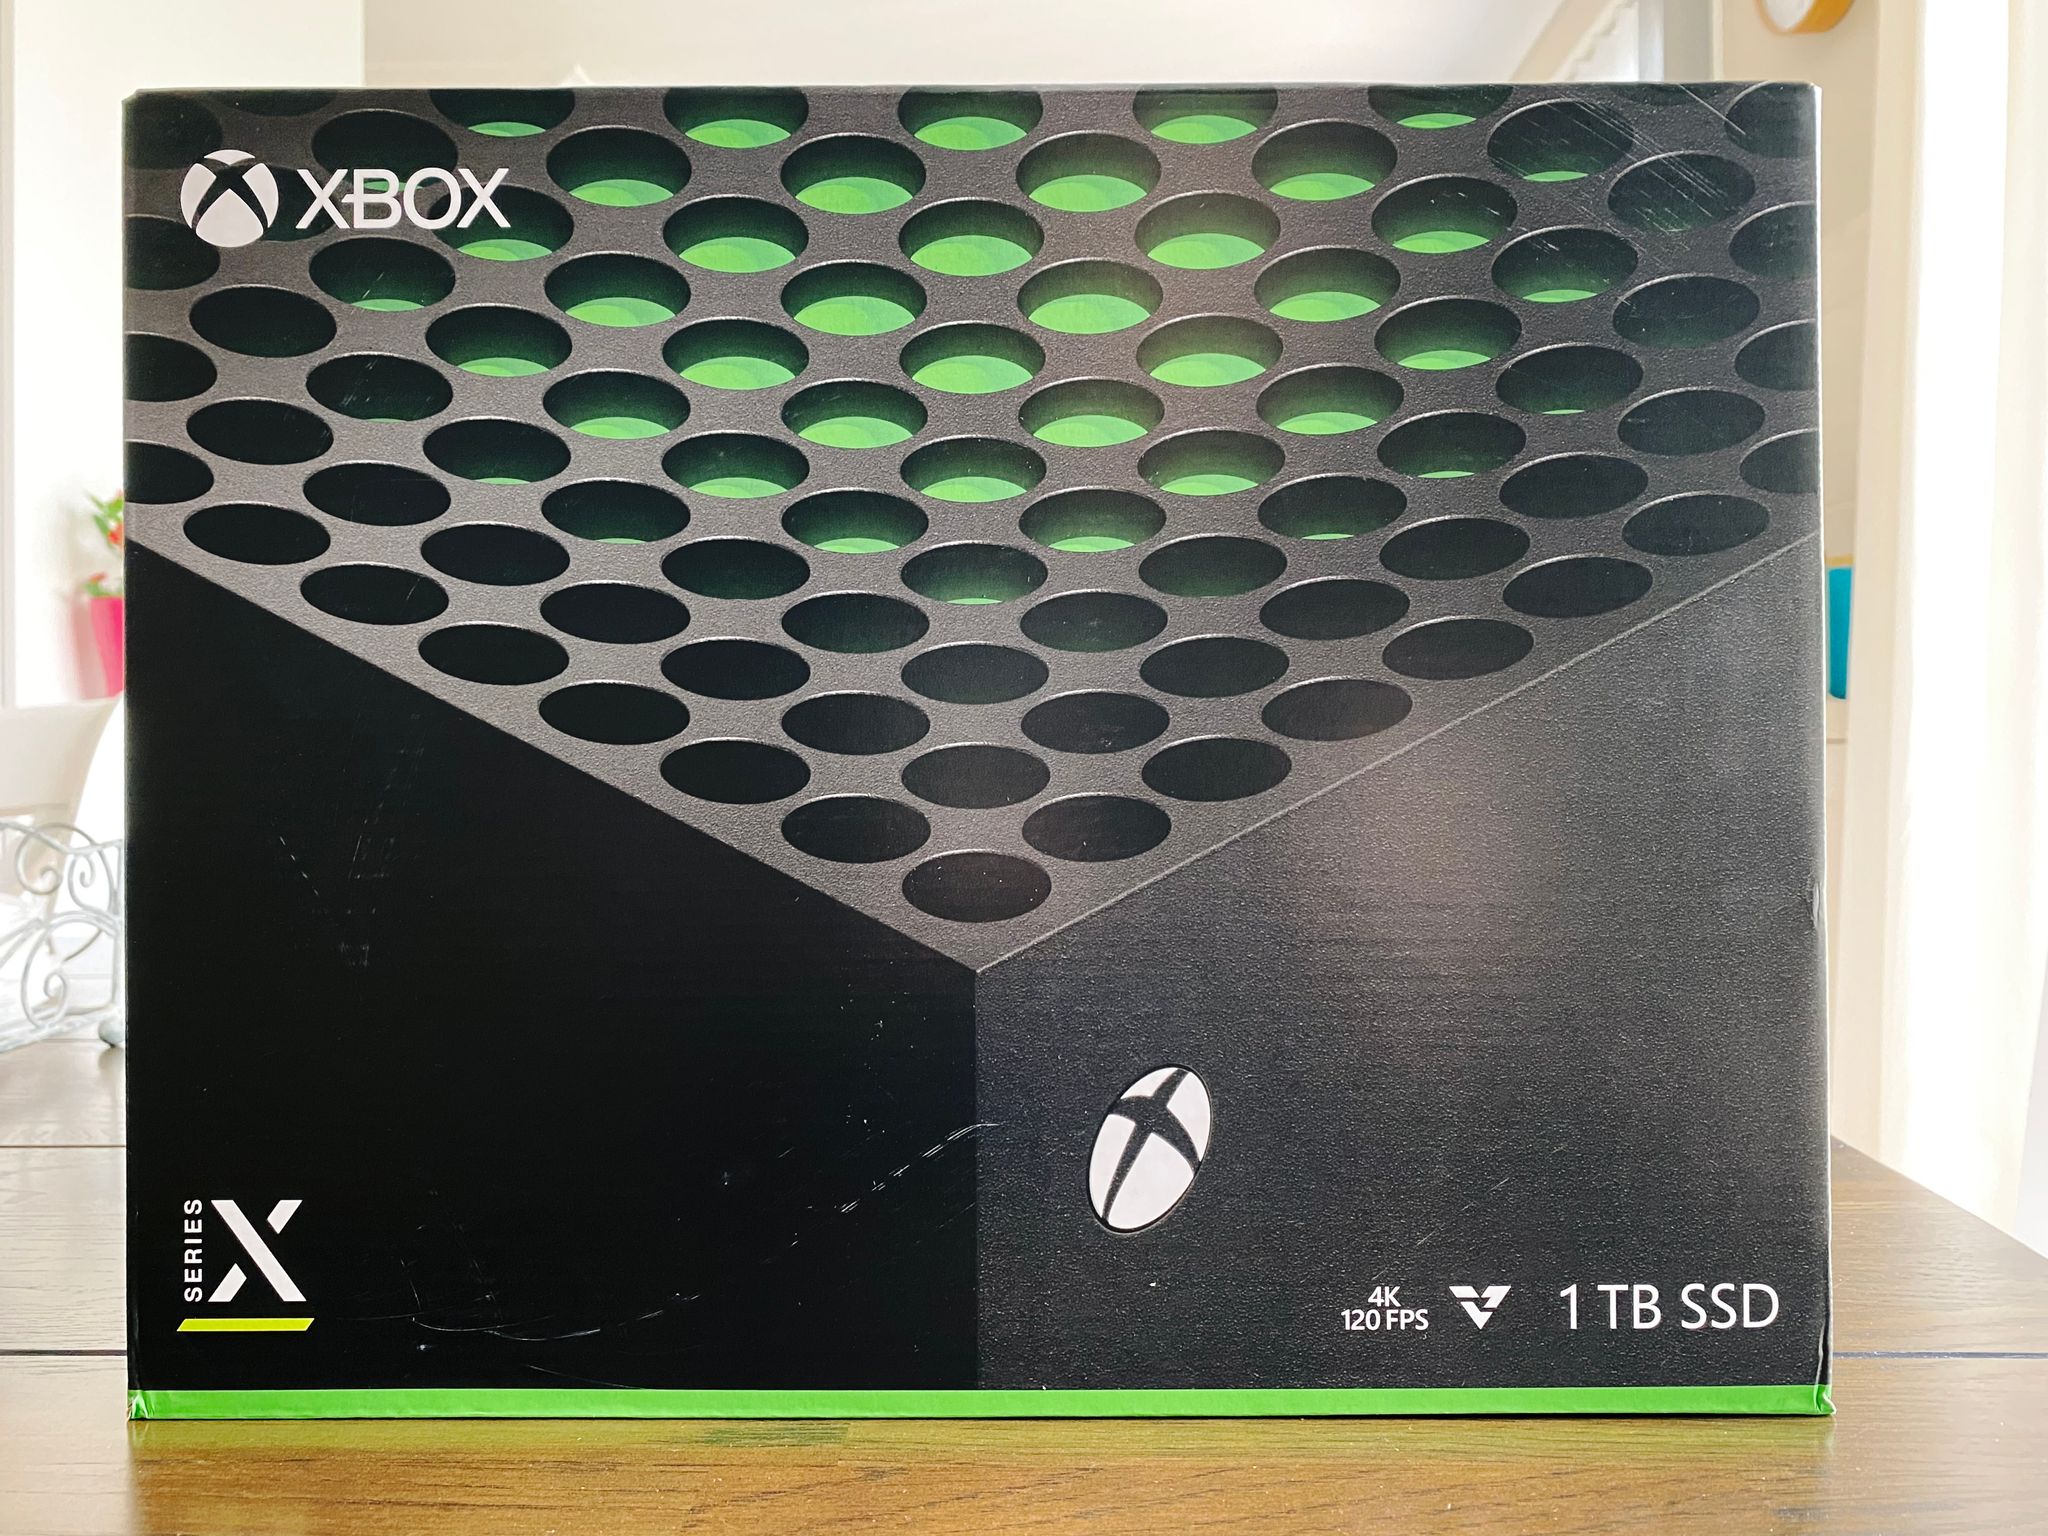 A photo of an Xbox Series X box.